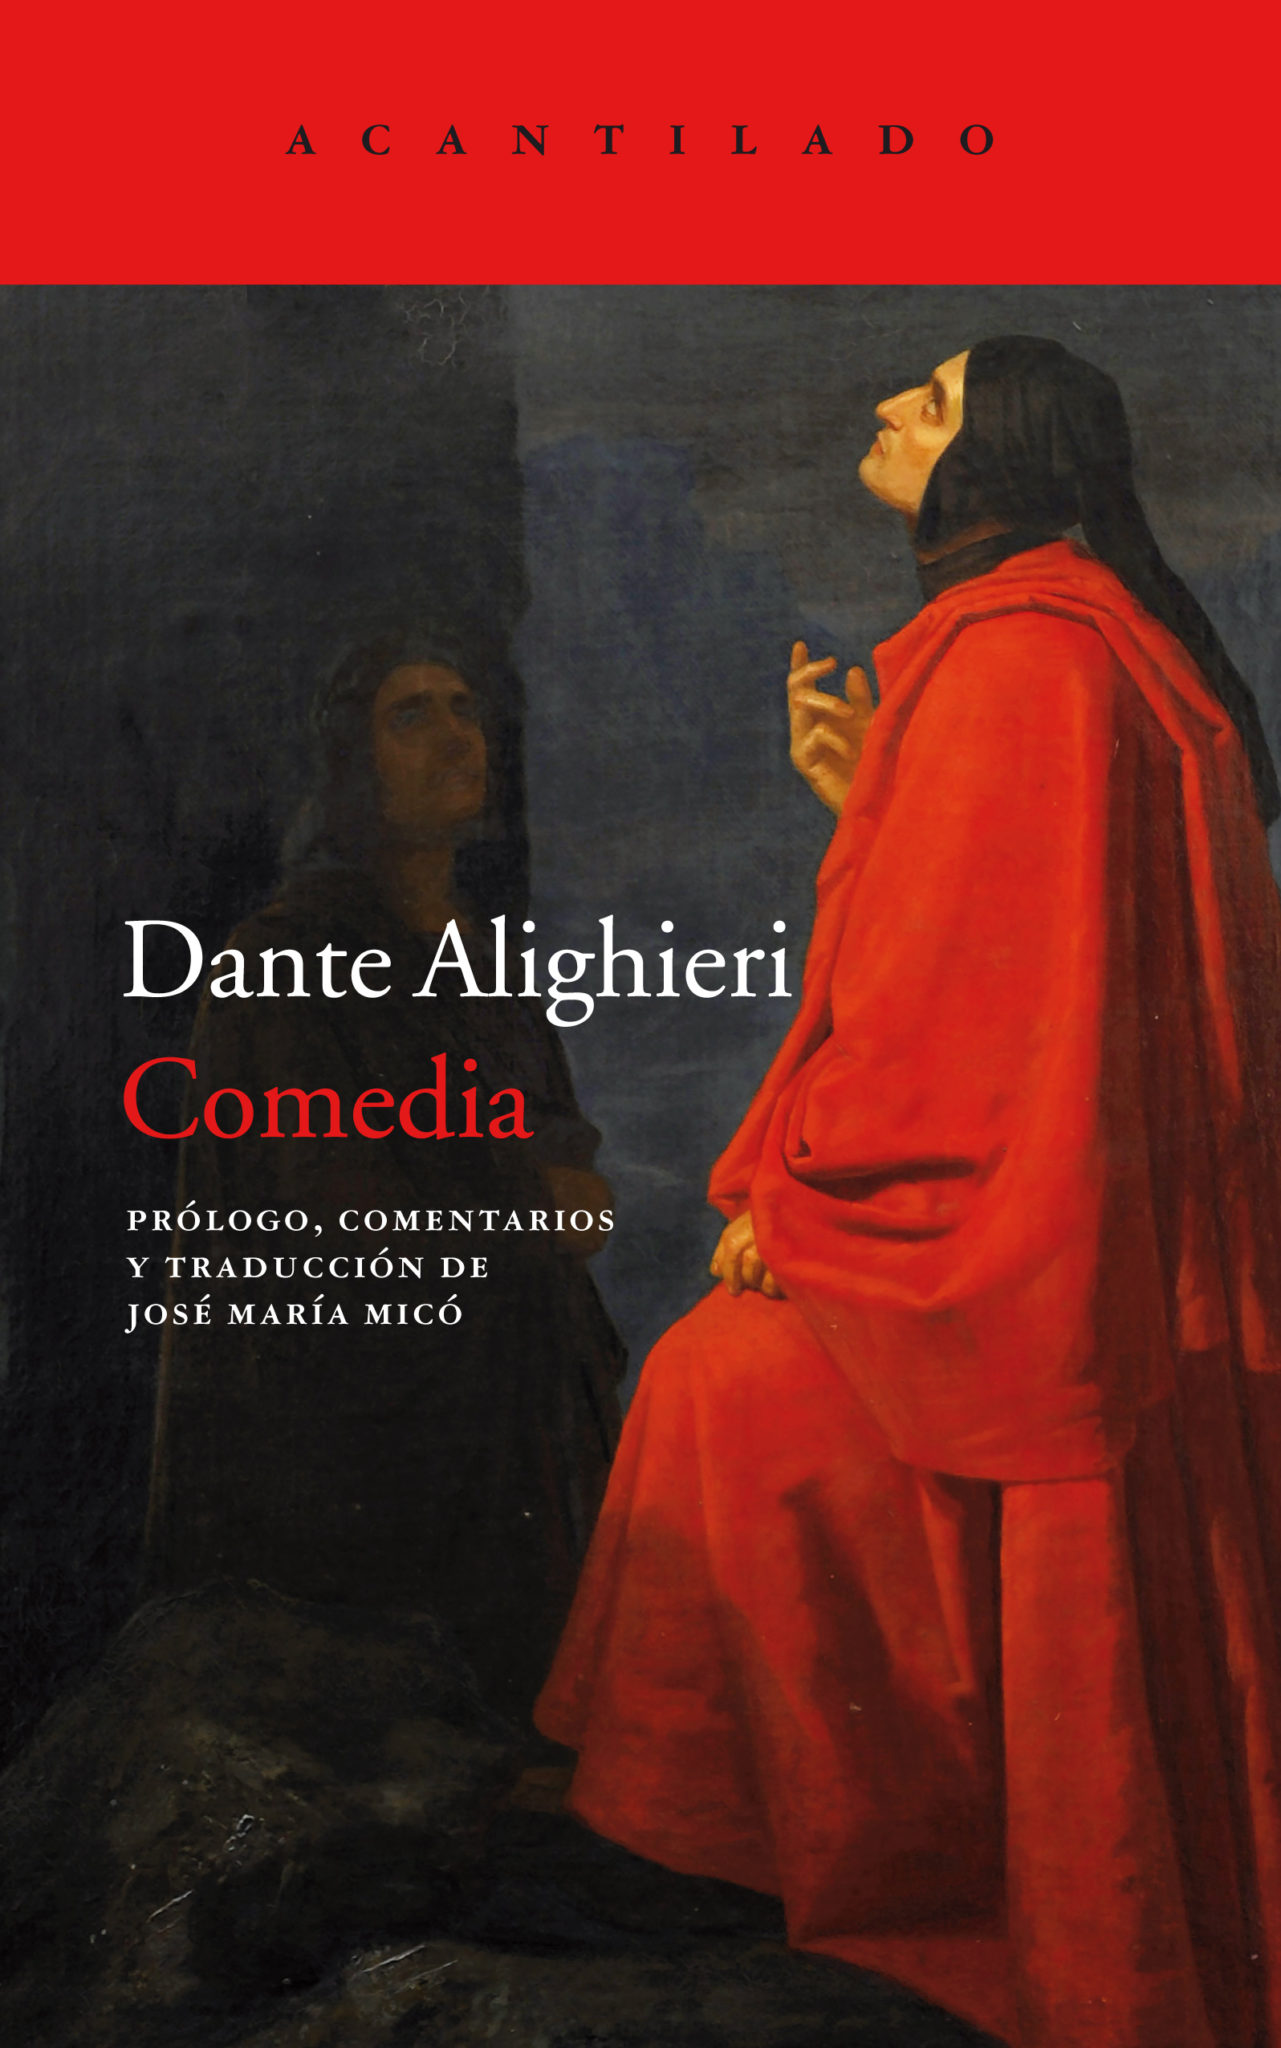 Una Comedia, de Dante Alighieri per José María Micó